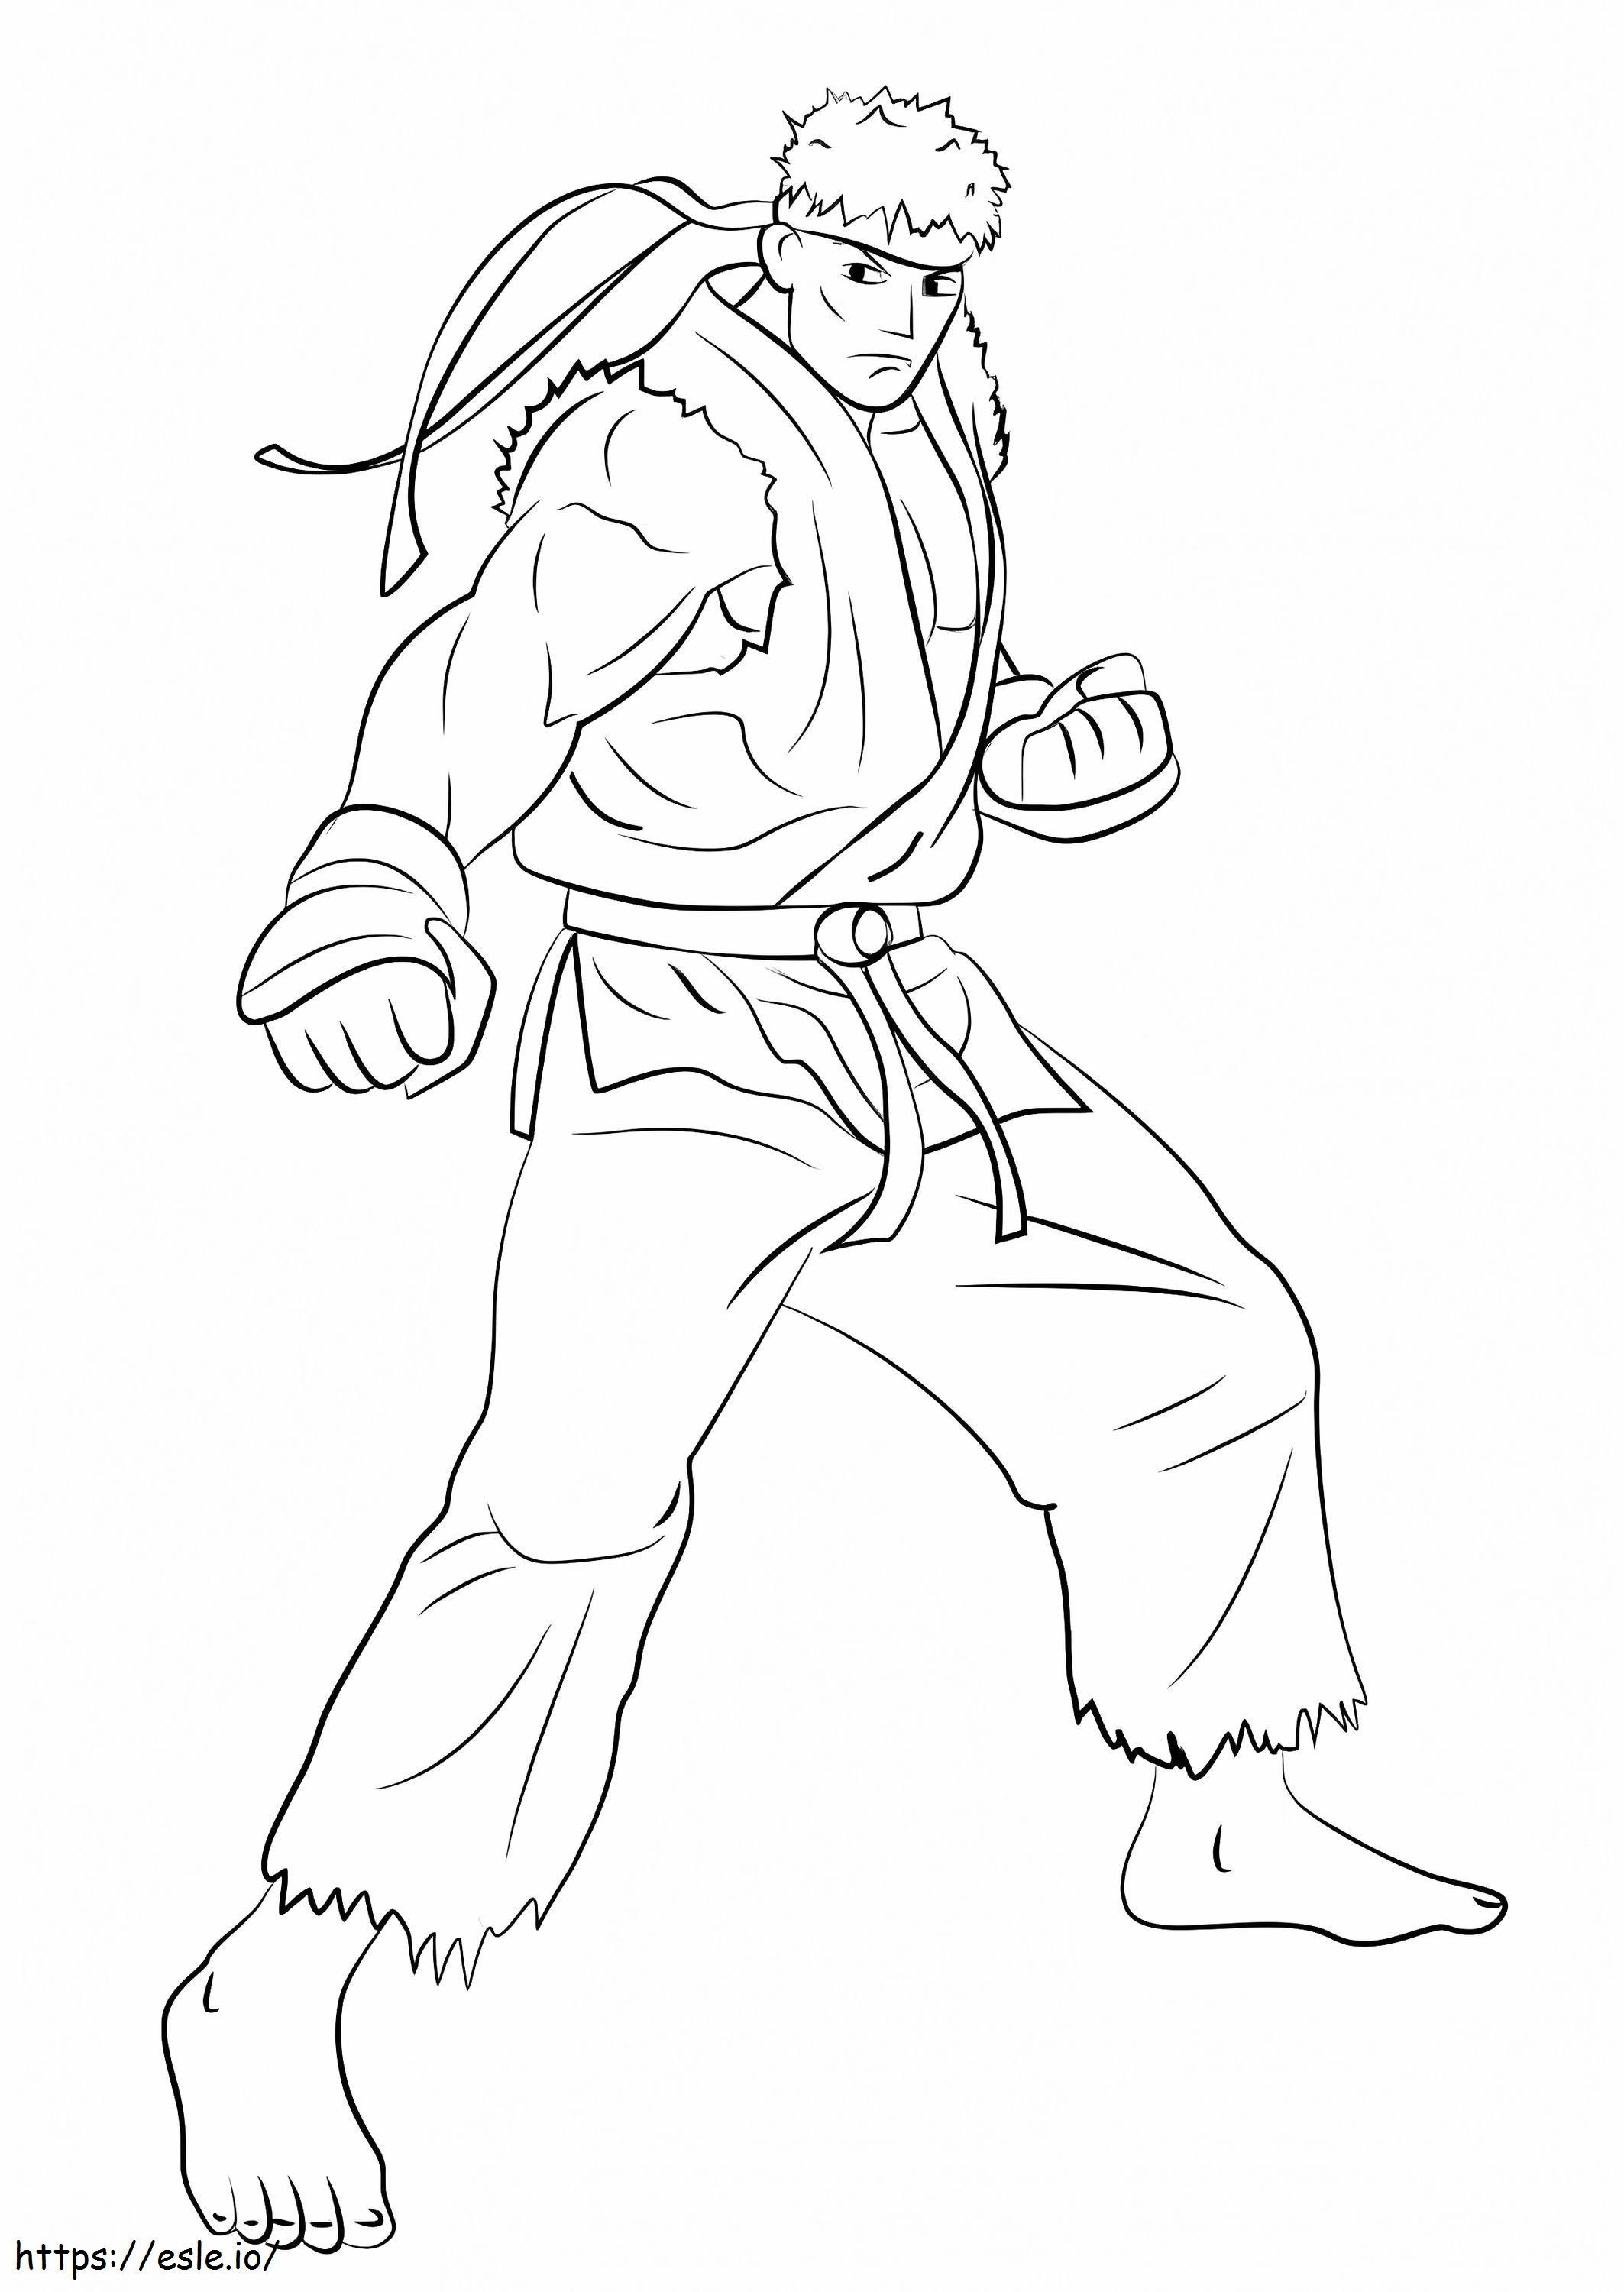 Ryu luchando para colorear